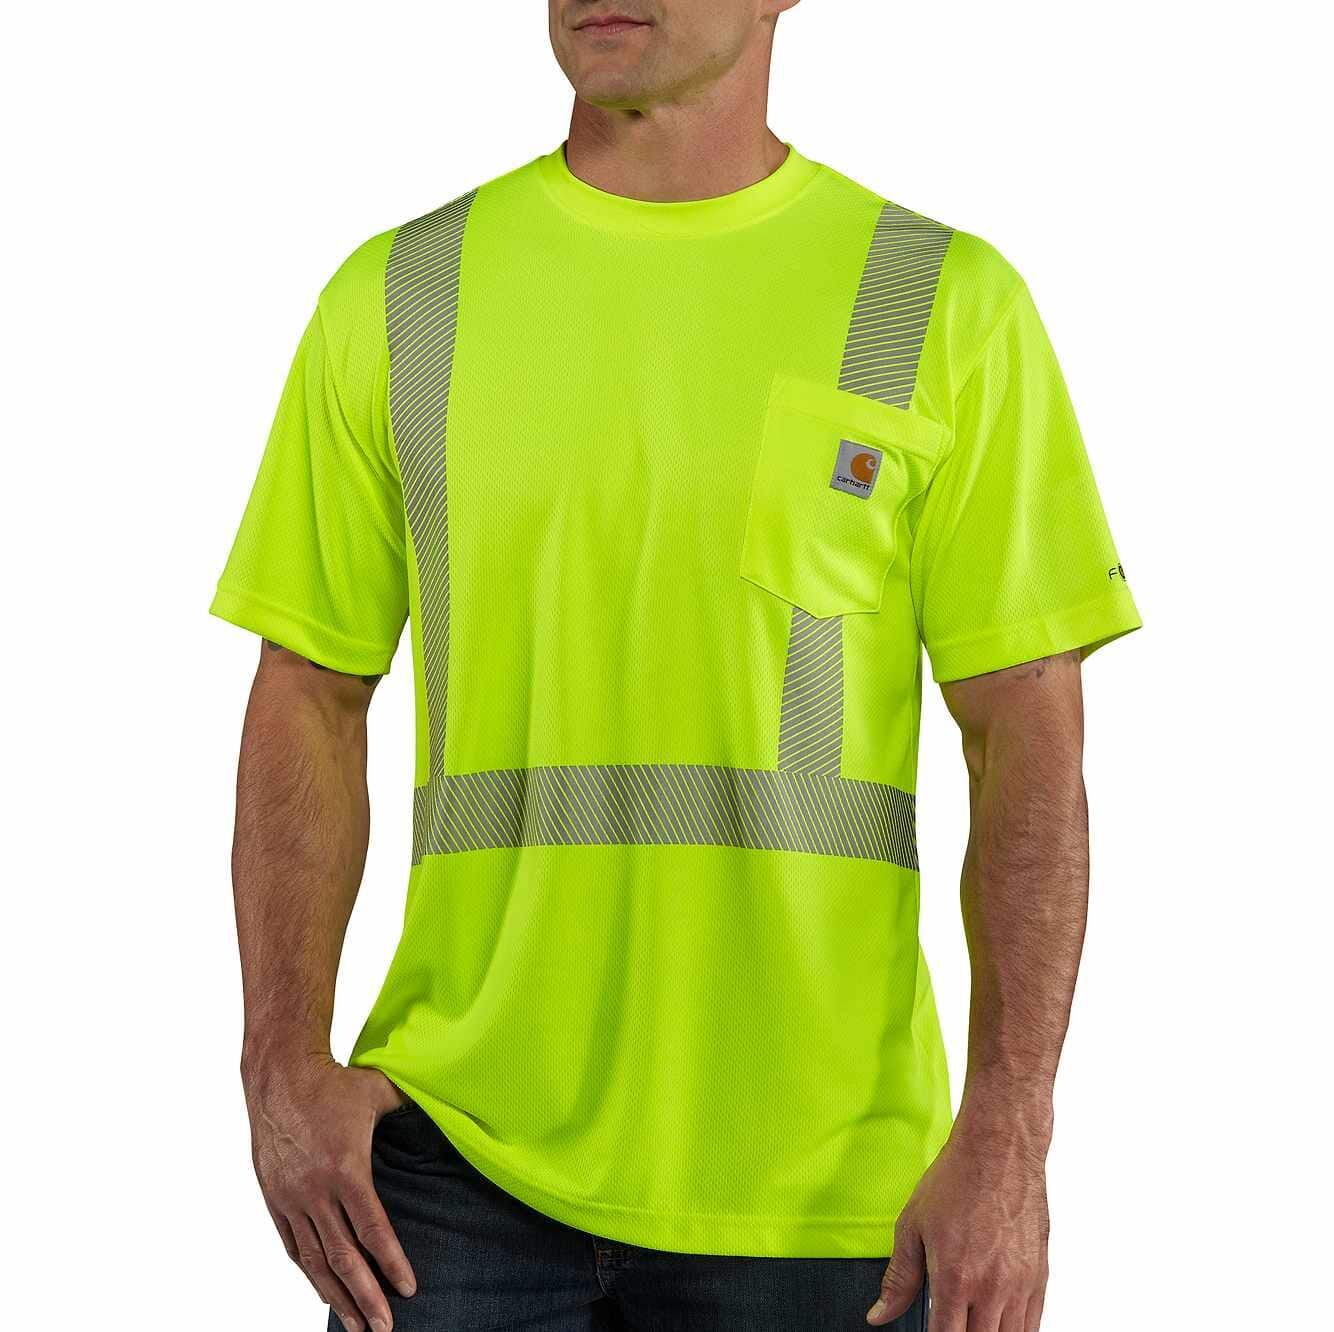 Carhartt Force High-Visibility Short-Sleeve Class 2 T-Shirt